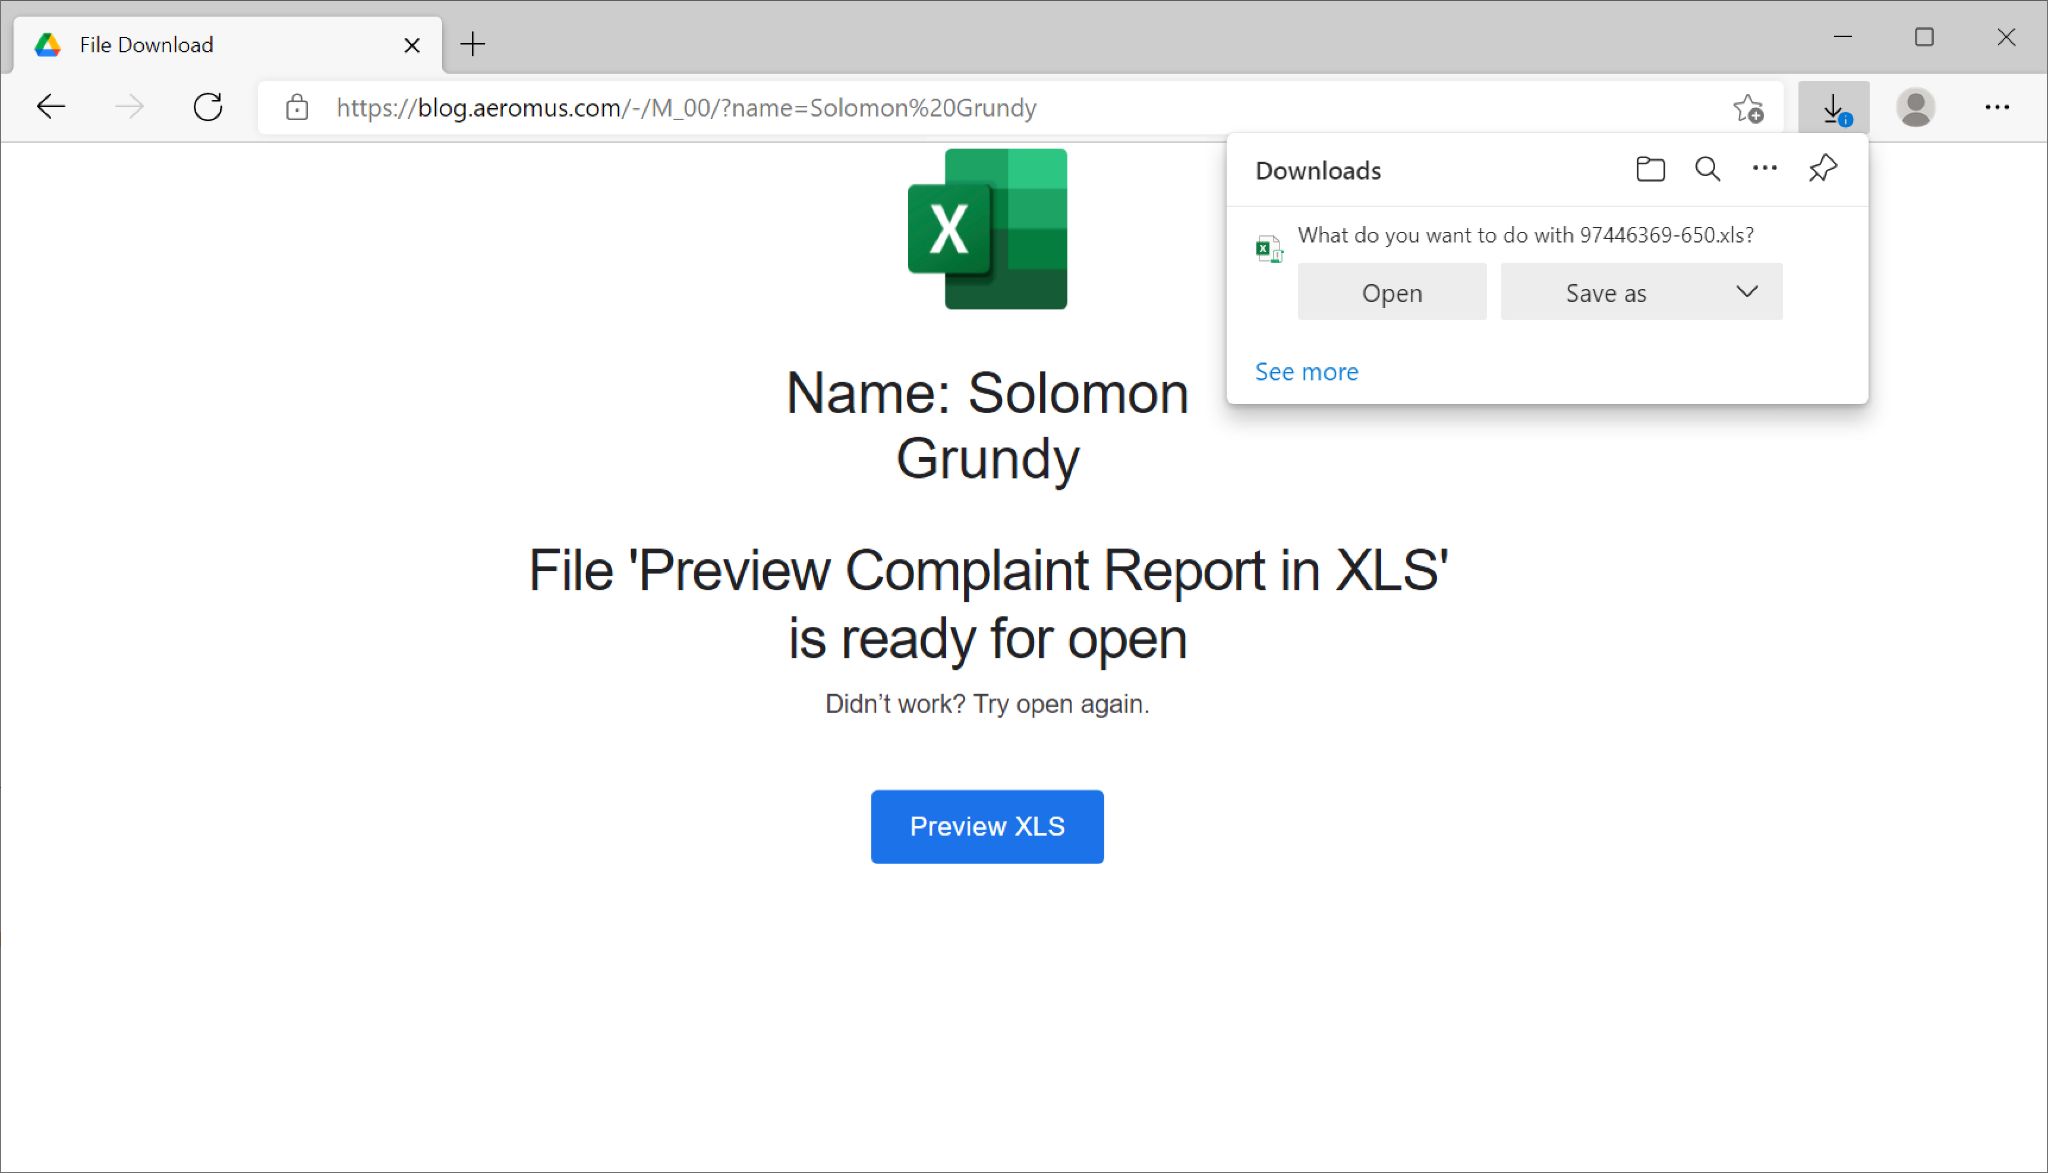 偽の苦情報告ページは図のような悪意のあるExcelスプレッドシートを配信しようとする。このスクリーンショットにはFile 'Preview Compmlaint Report in XLS' is ready for openというメッセージが表示されている。 